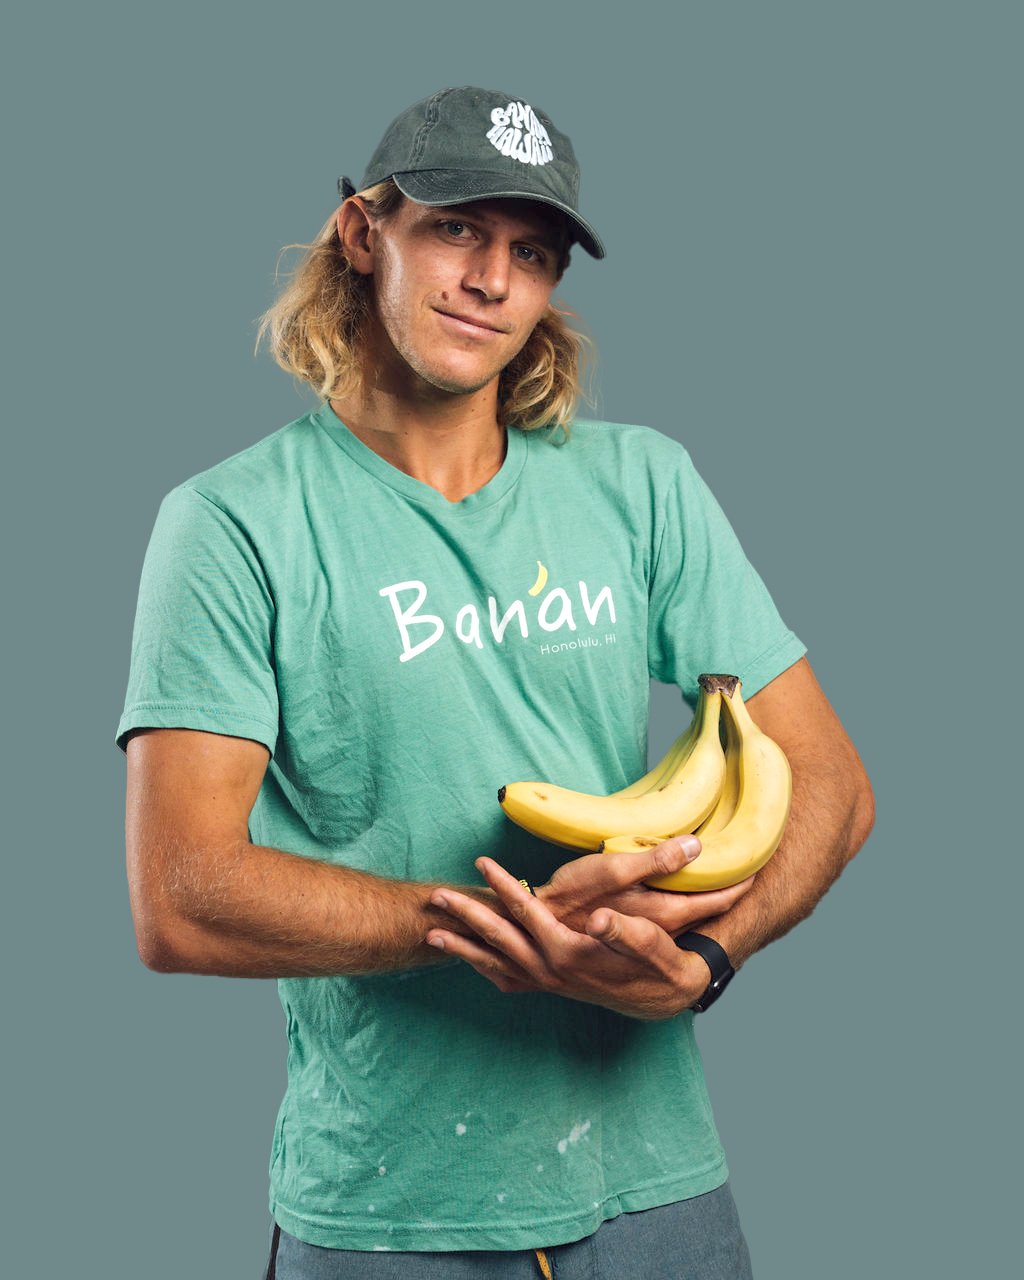 Banan Headshot.jpg